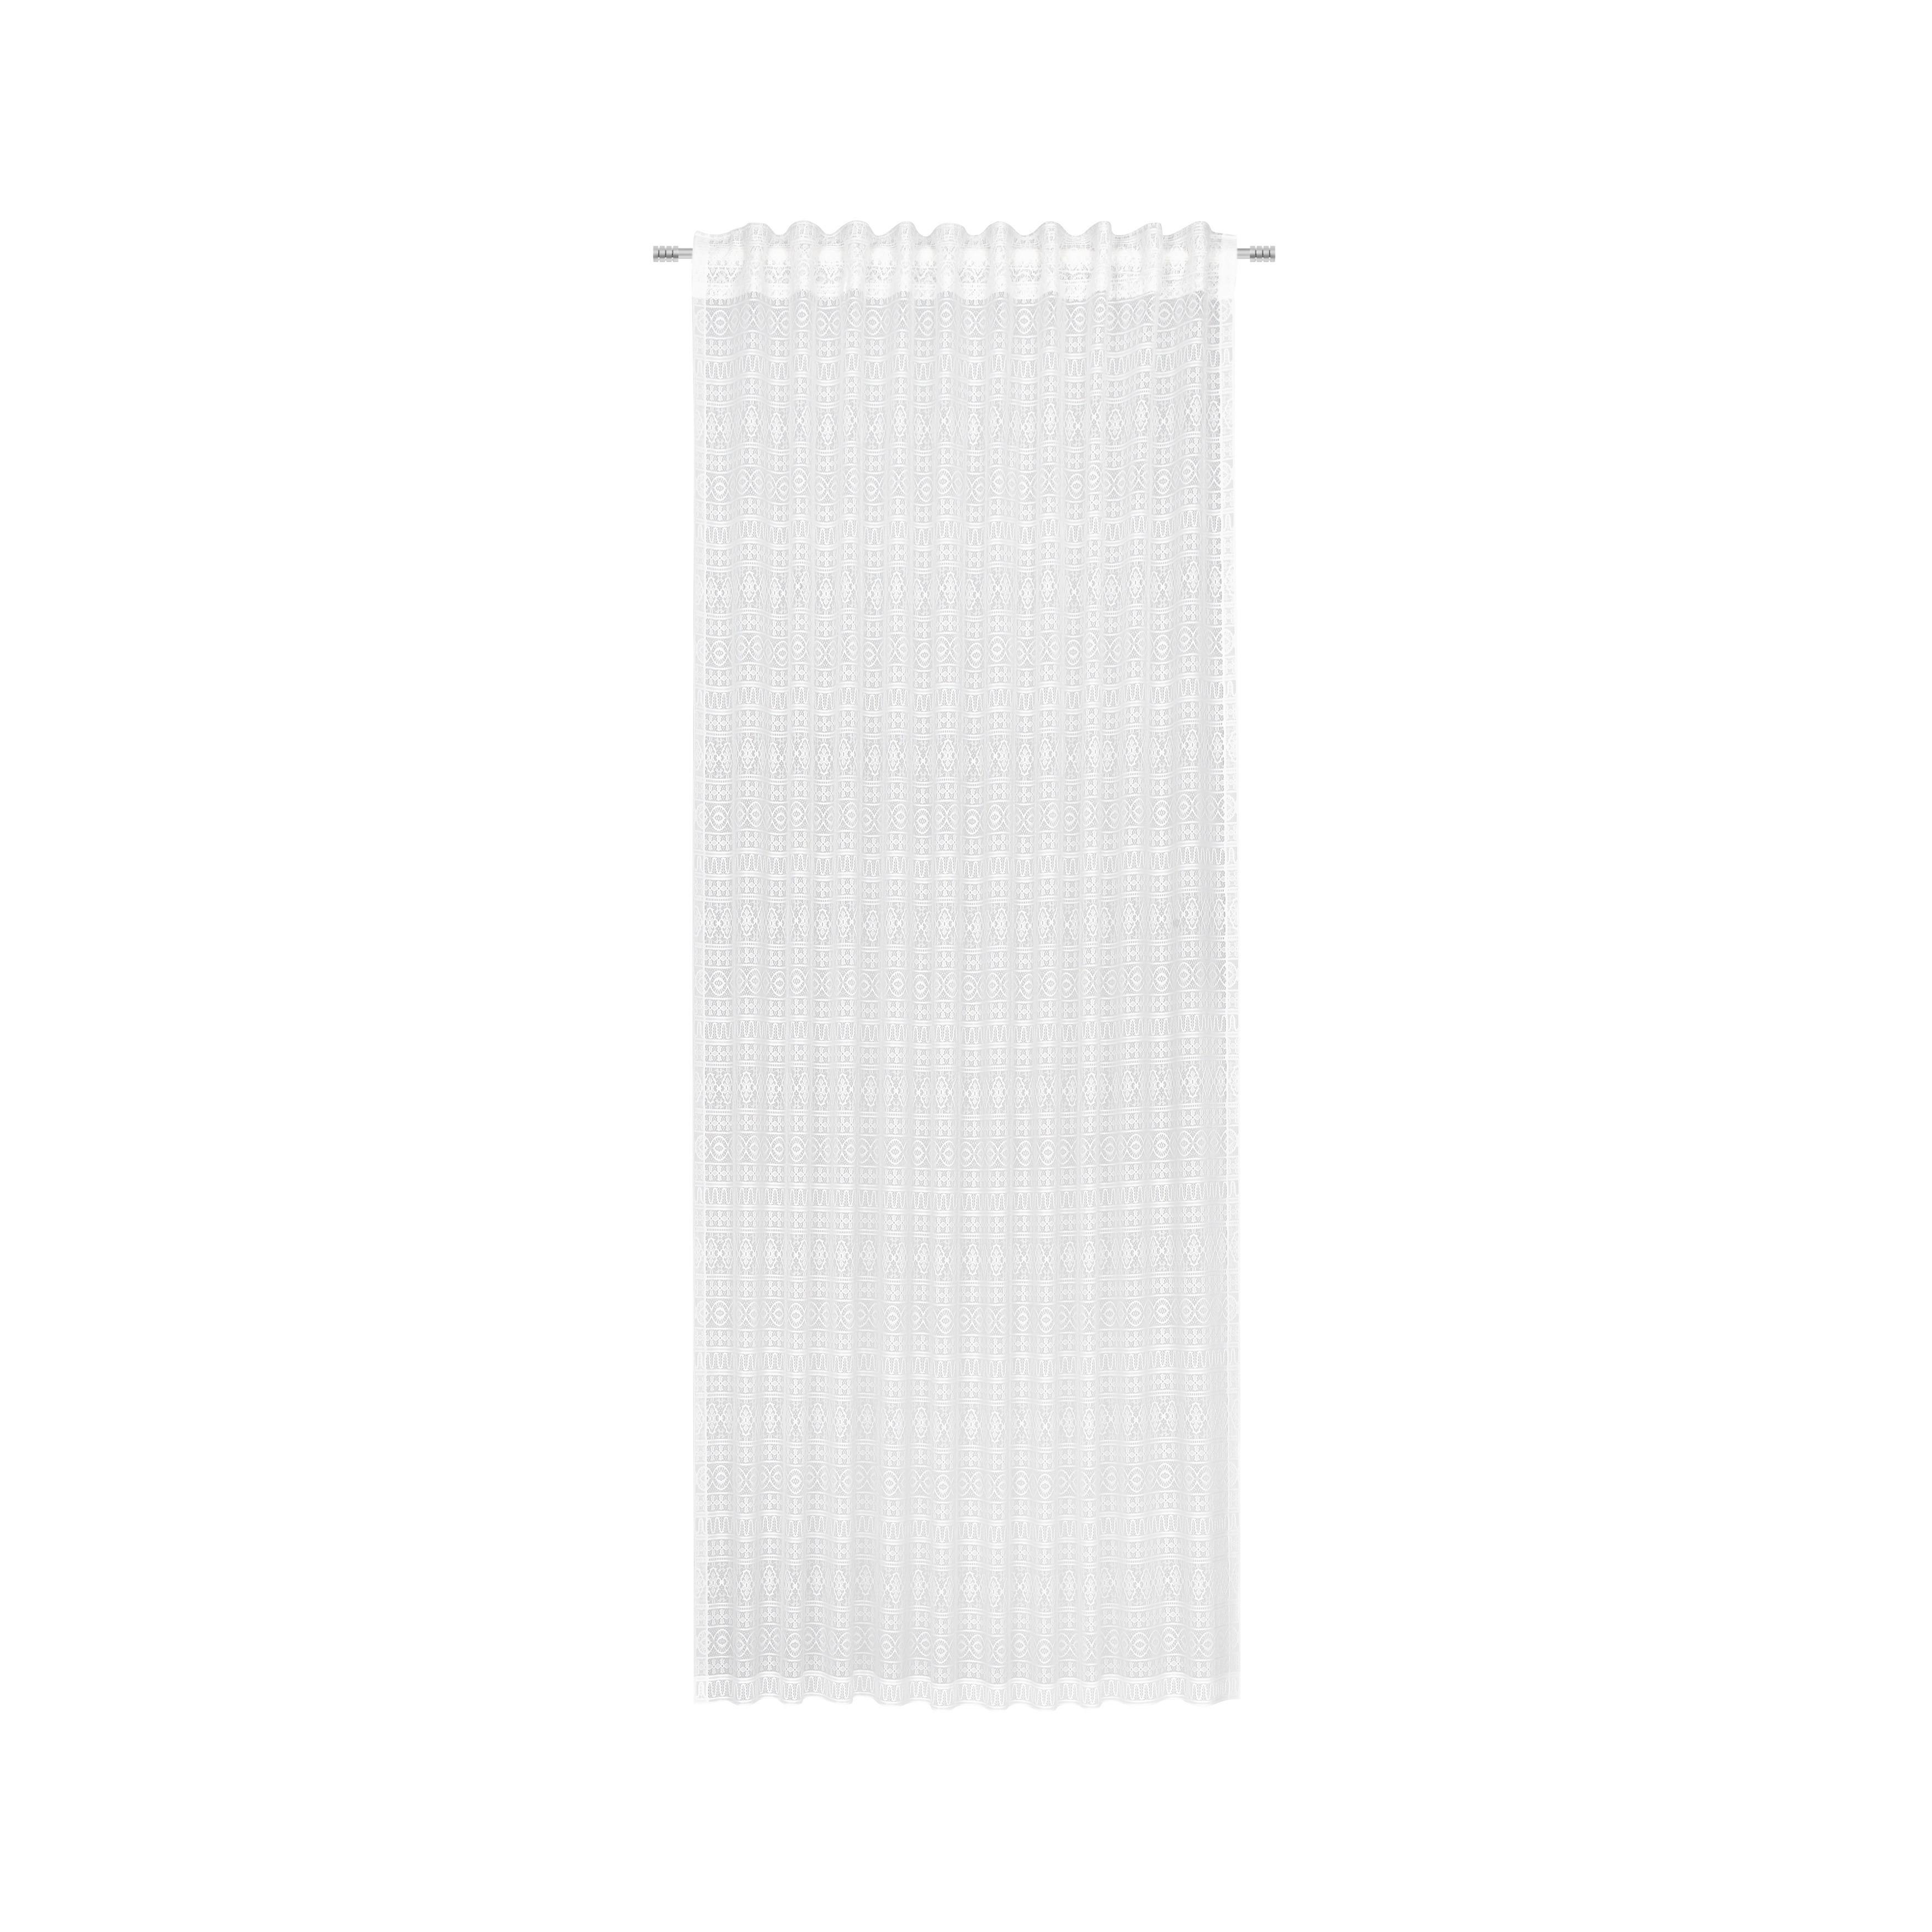 Schlaufenvorhang Theresa in Weiß ca. 140x245cm - Weiß, Textil (140/245cm) - Modern Living